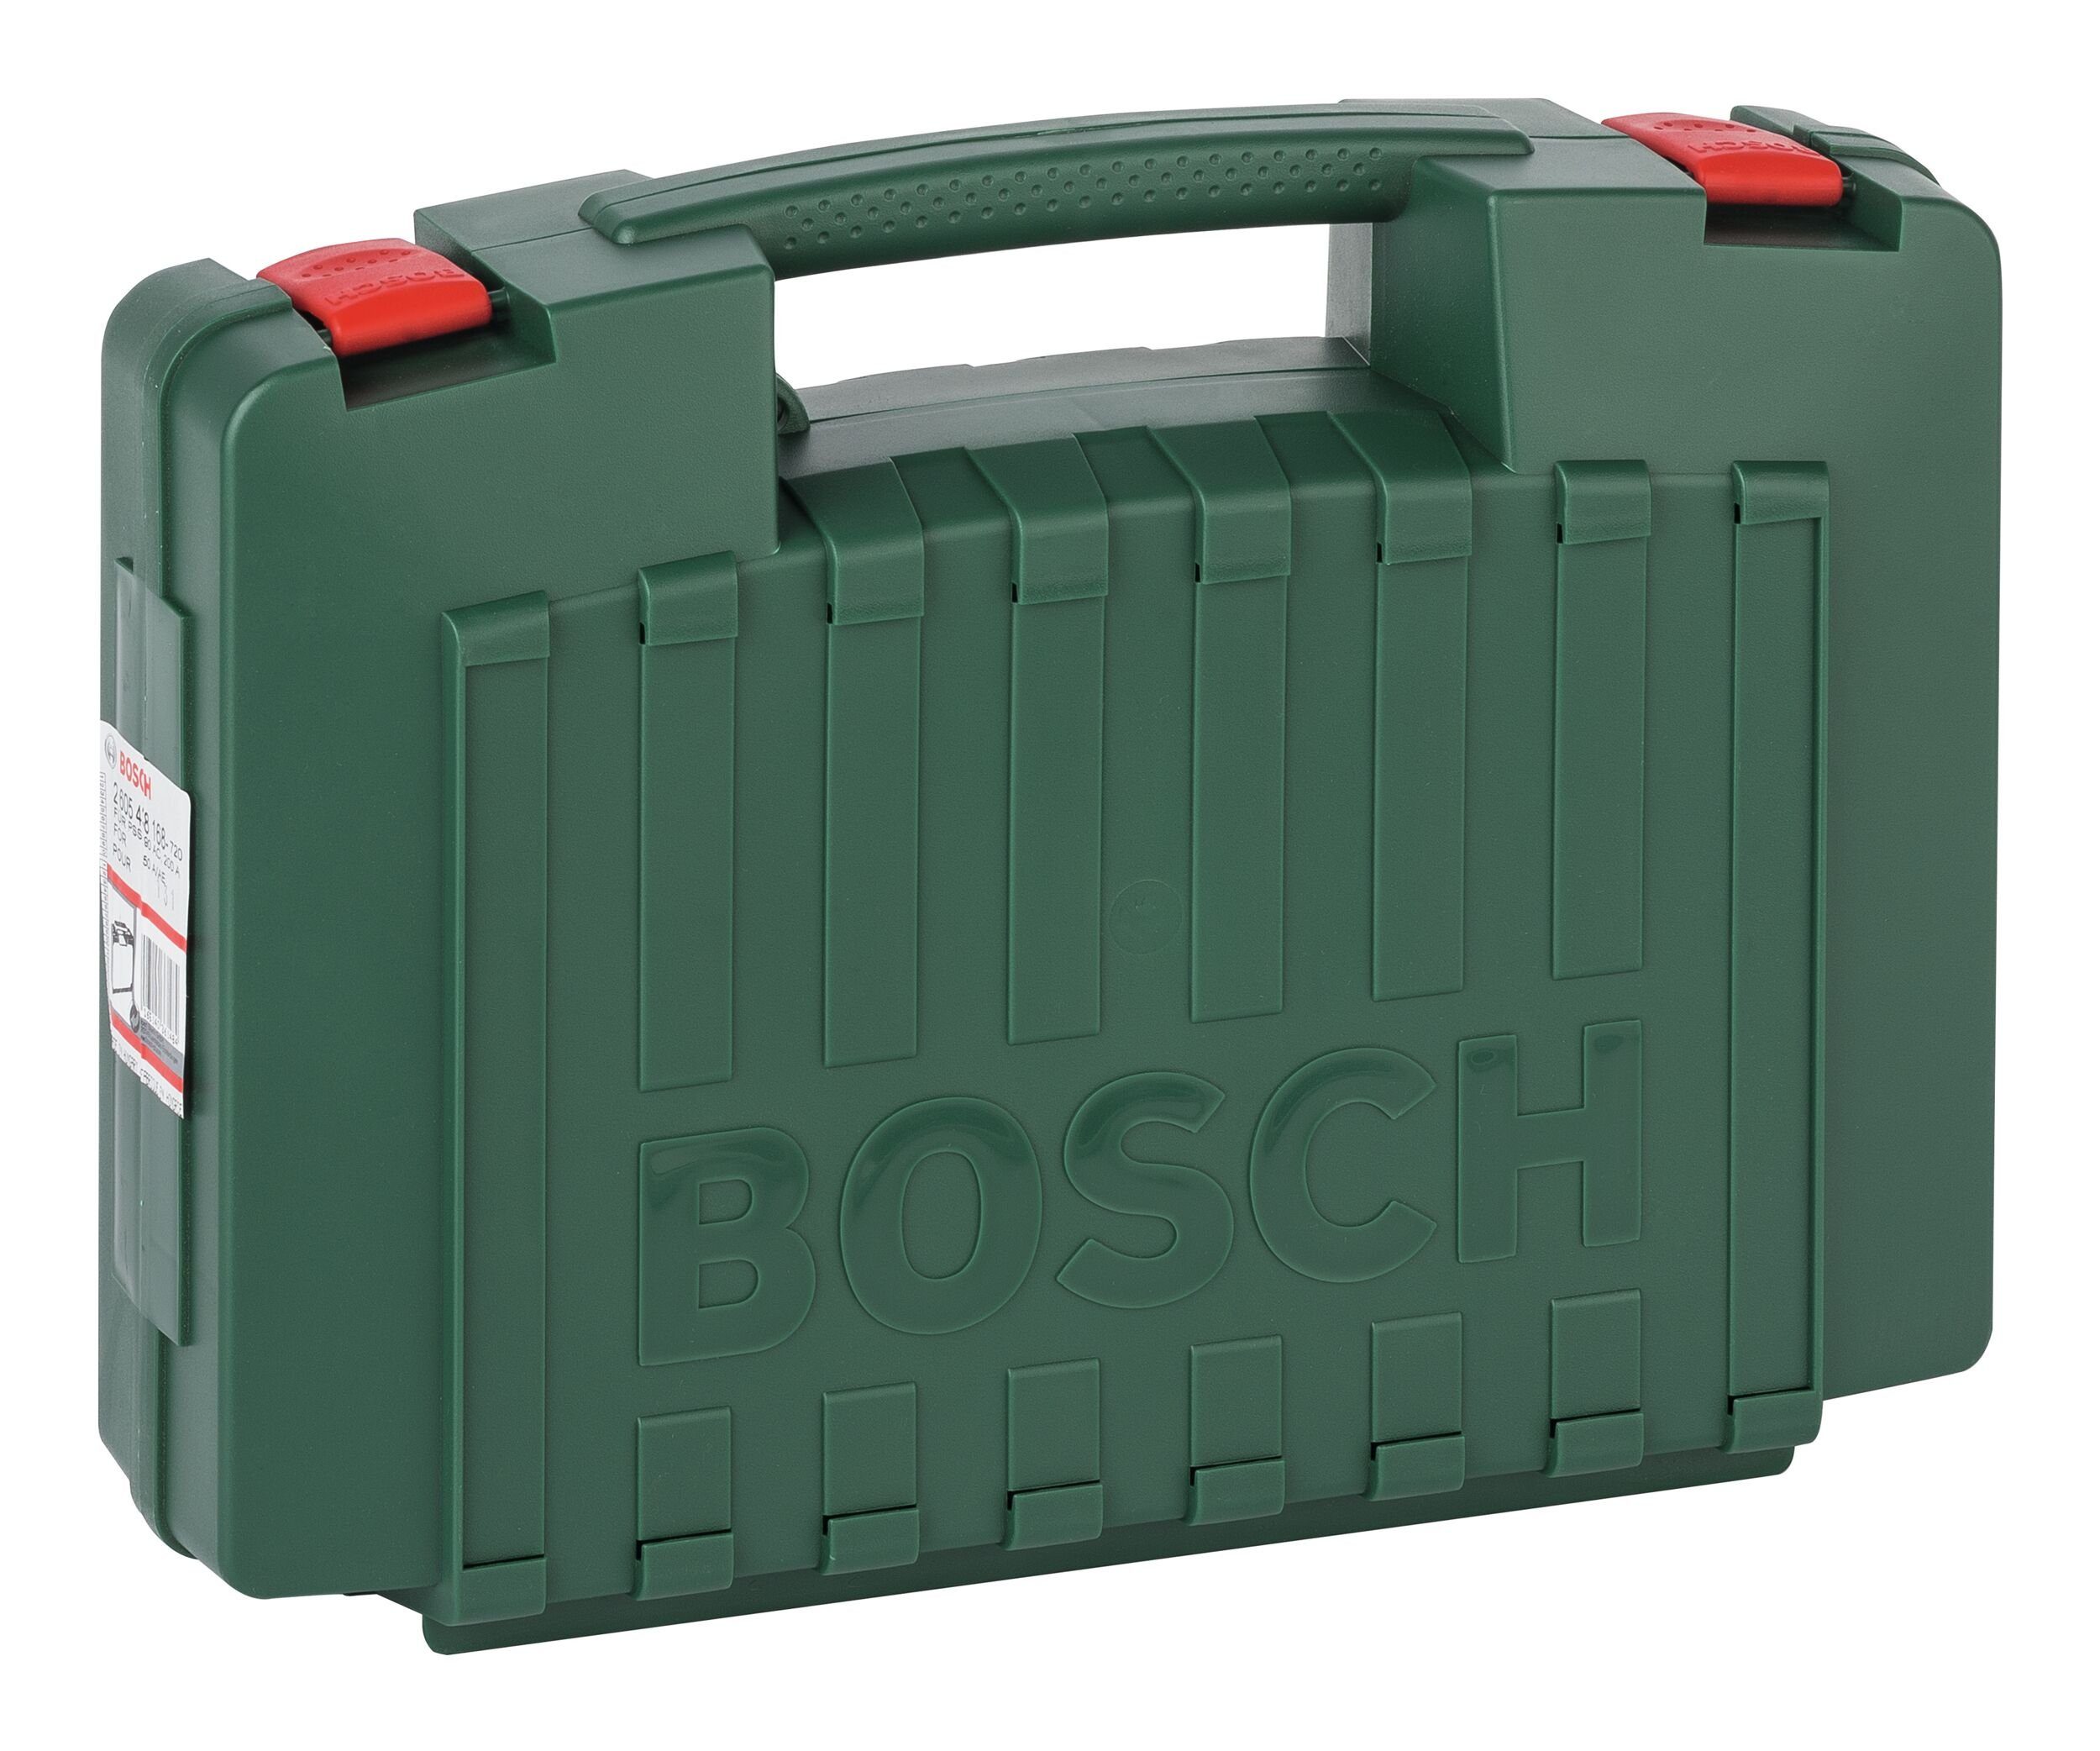 Bosch Accessories Bosch Home & Garden Werkzeugkoffer, Kunststoffkoffer grün - 421 x 117 x 336 mm